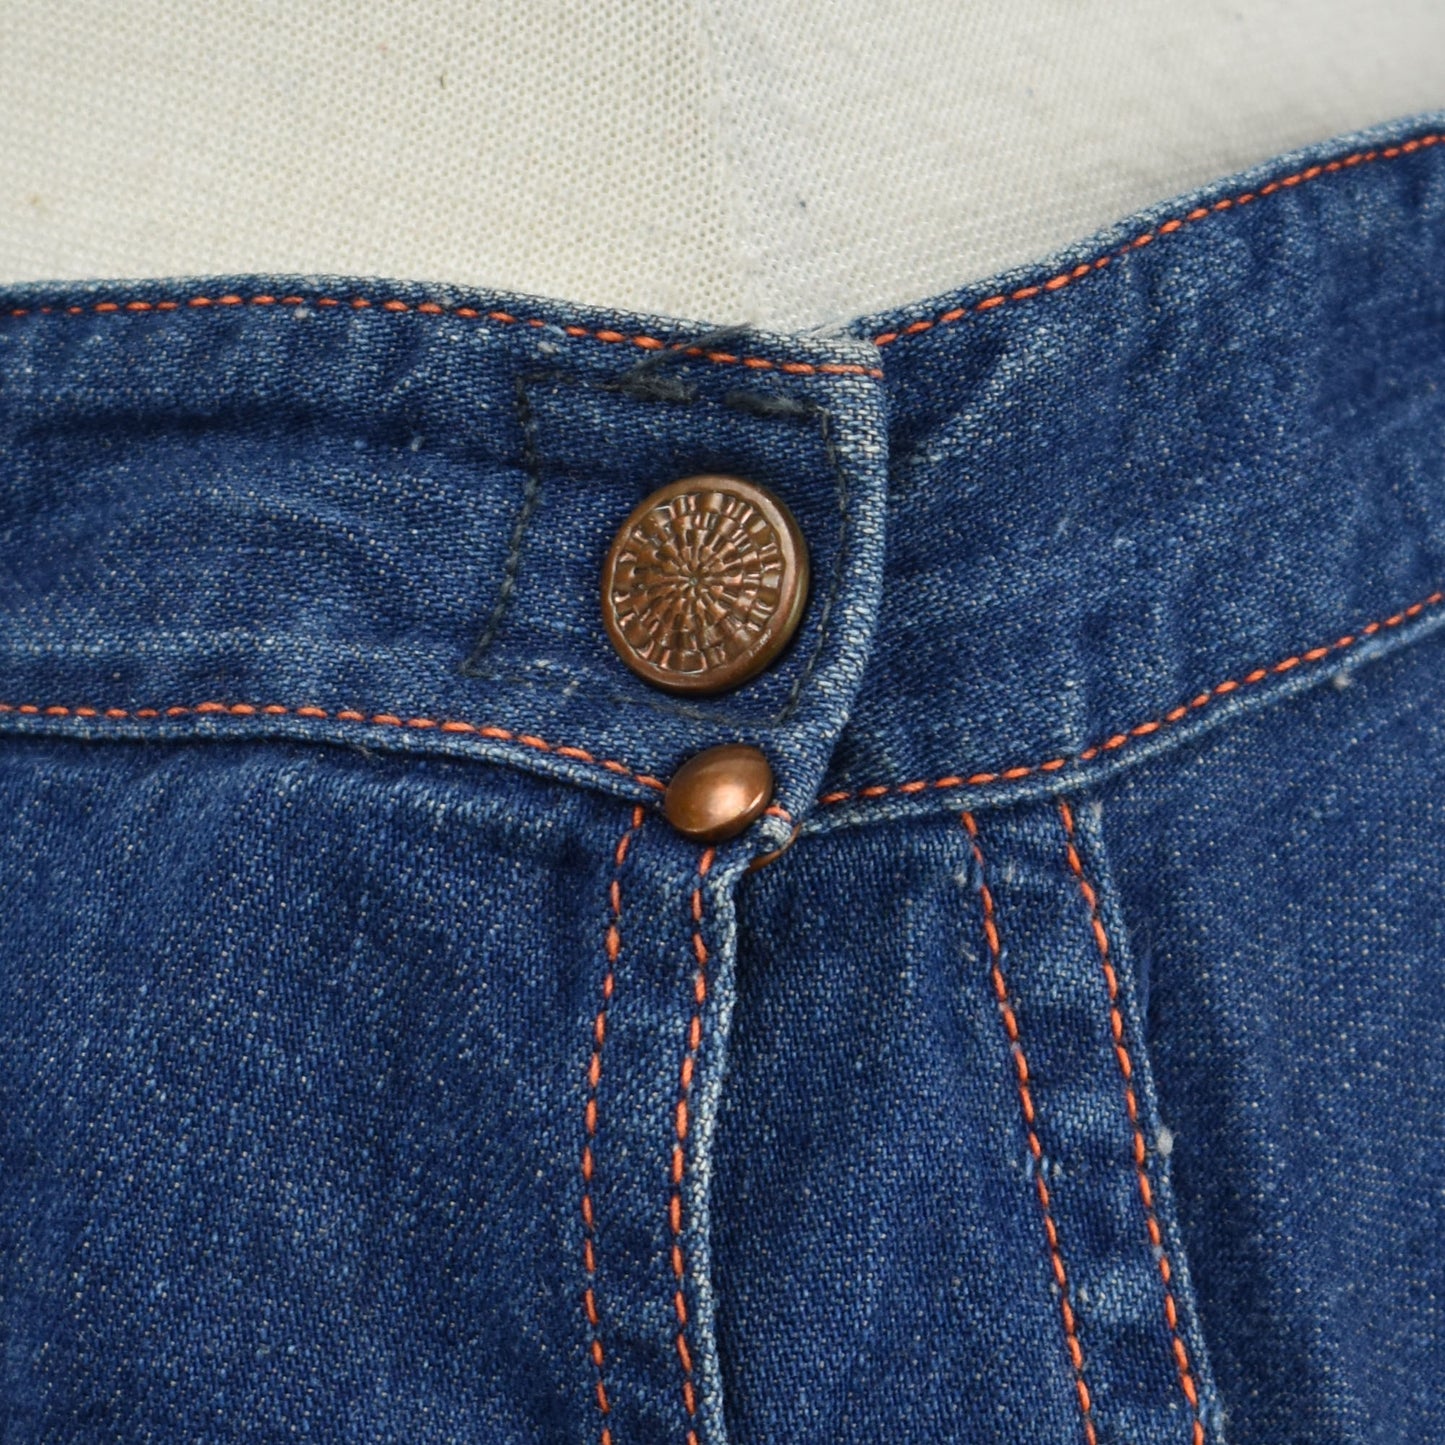 Vintage 50s / 60s Women's Denim Jeans - Indigo with Orange Stitching Detail- Size 32 - Size Serval Zipper